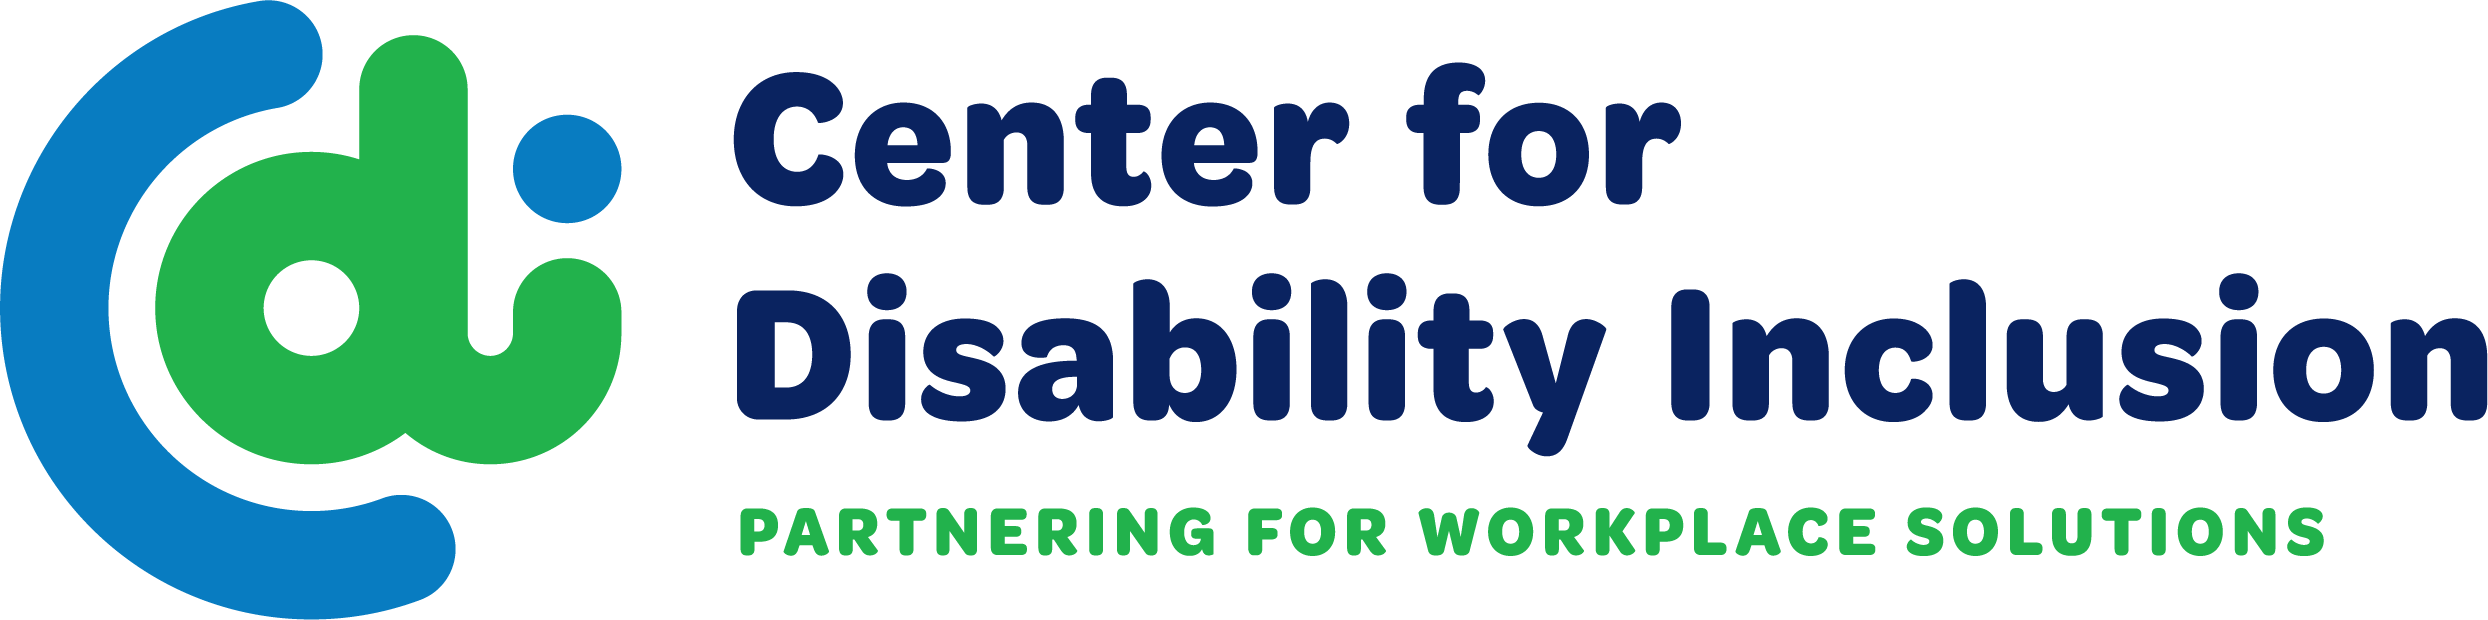 “为工作场所解决方案建立伙伴关系”的完整组织名称和标语左侧的蓝色和绿色的C d i